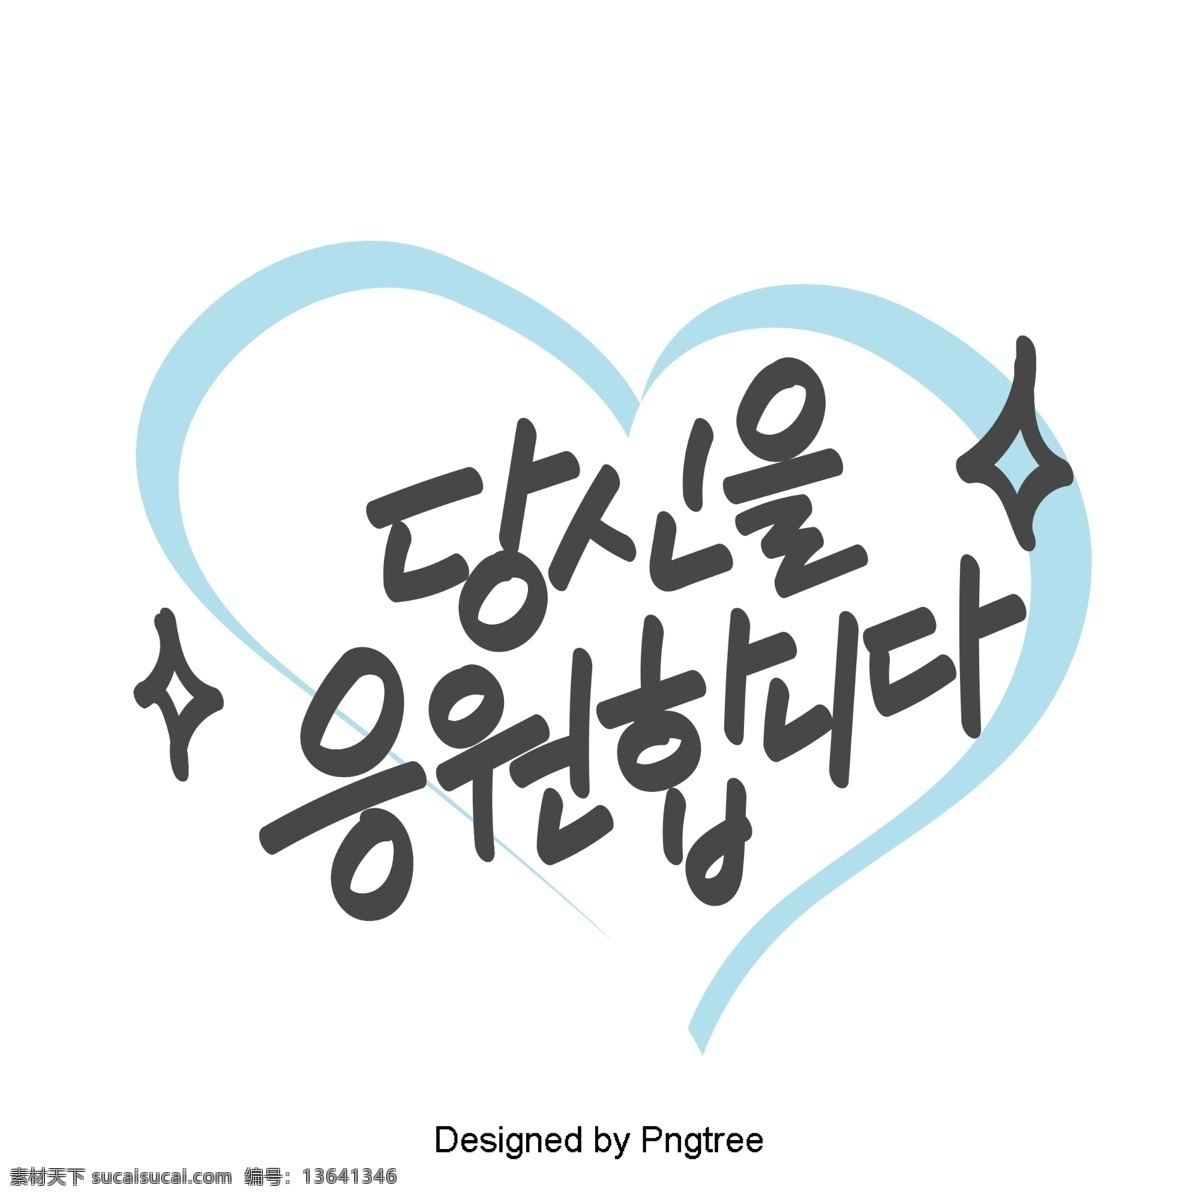 支持 随着 韩国 日常 表达 手中 耳语 种 带有 材料 字体 简单 语风 贴纸 每日词汇量 可爱 蓝色 字形 移动支付